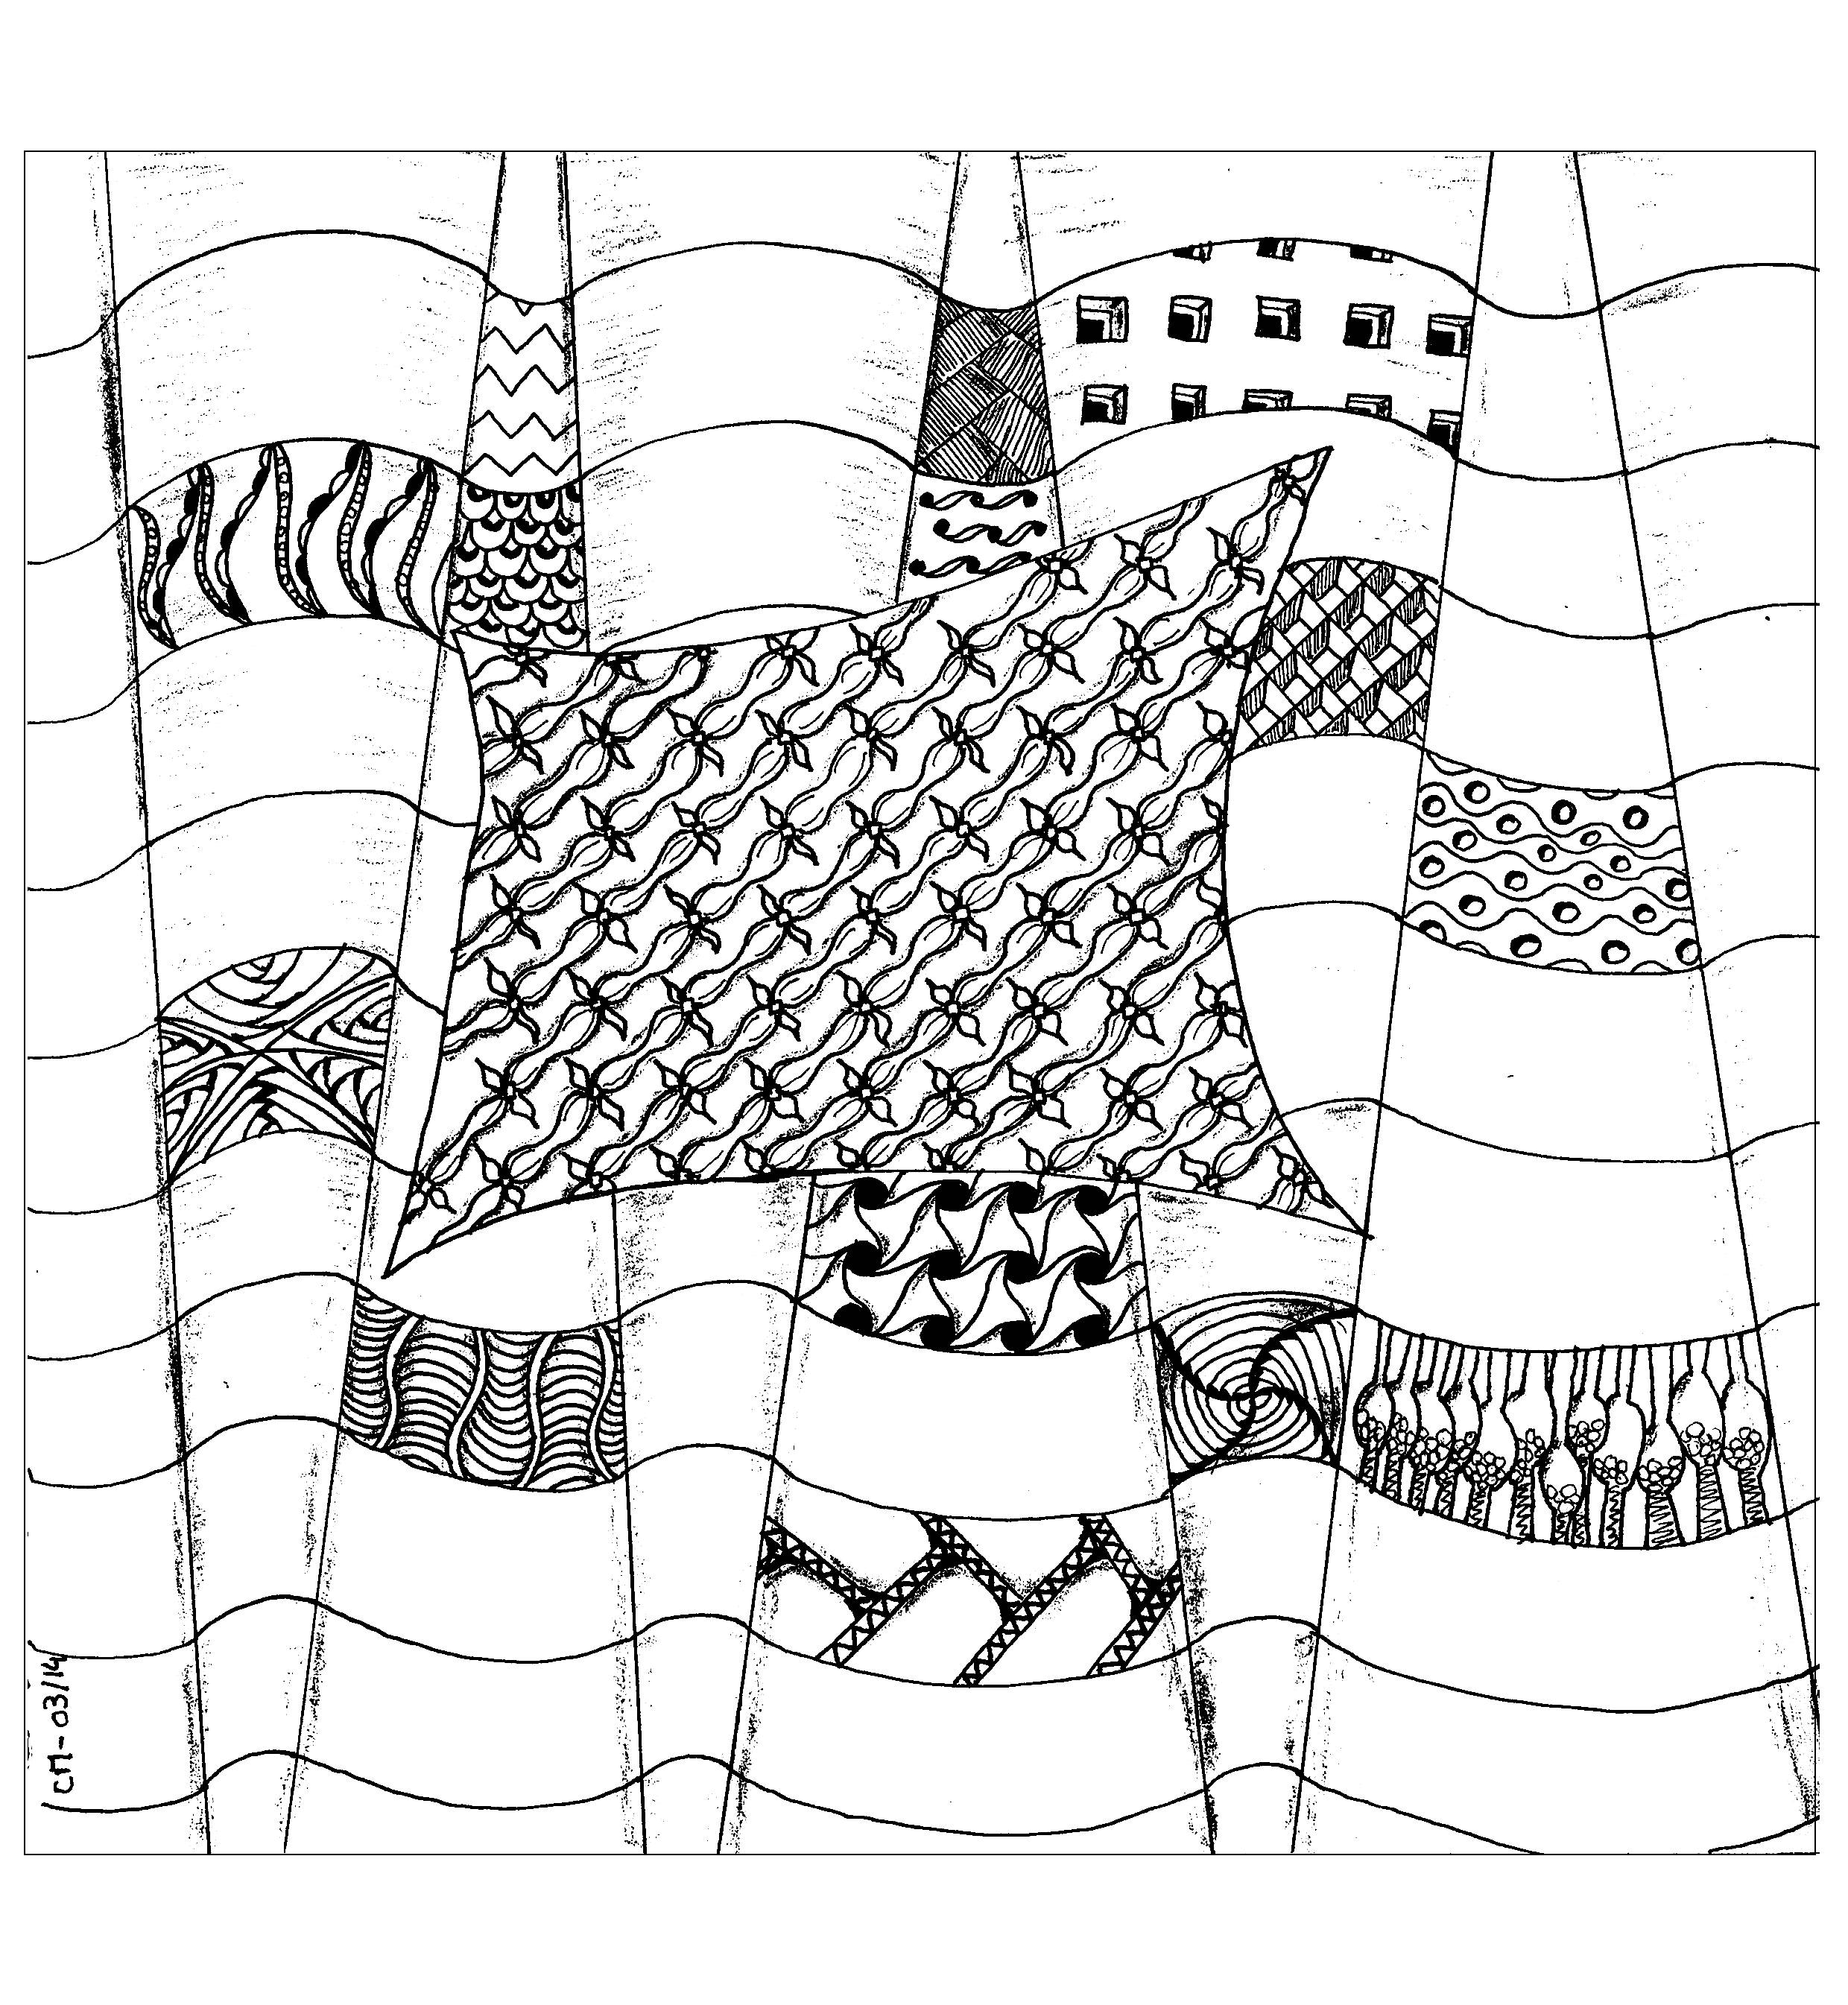 Dibujos para colorear gratis de Zentangle para imprimir y colorear, para niños